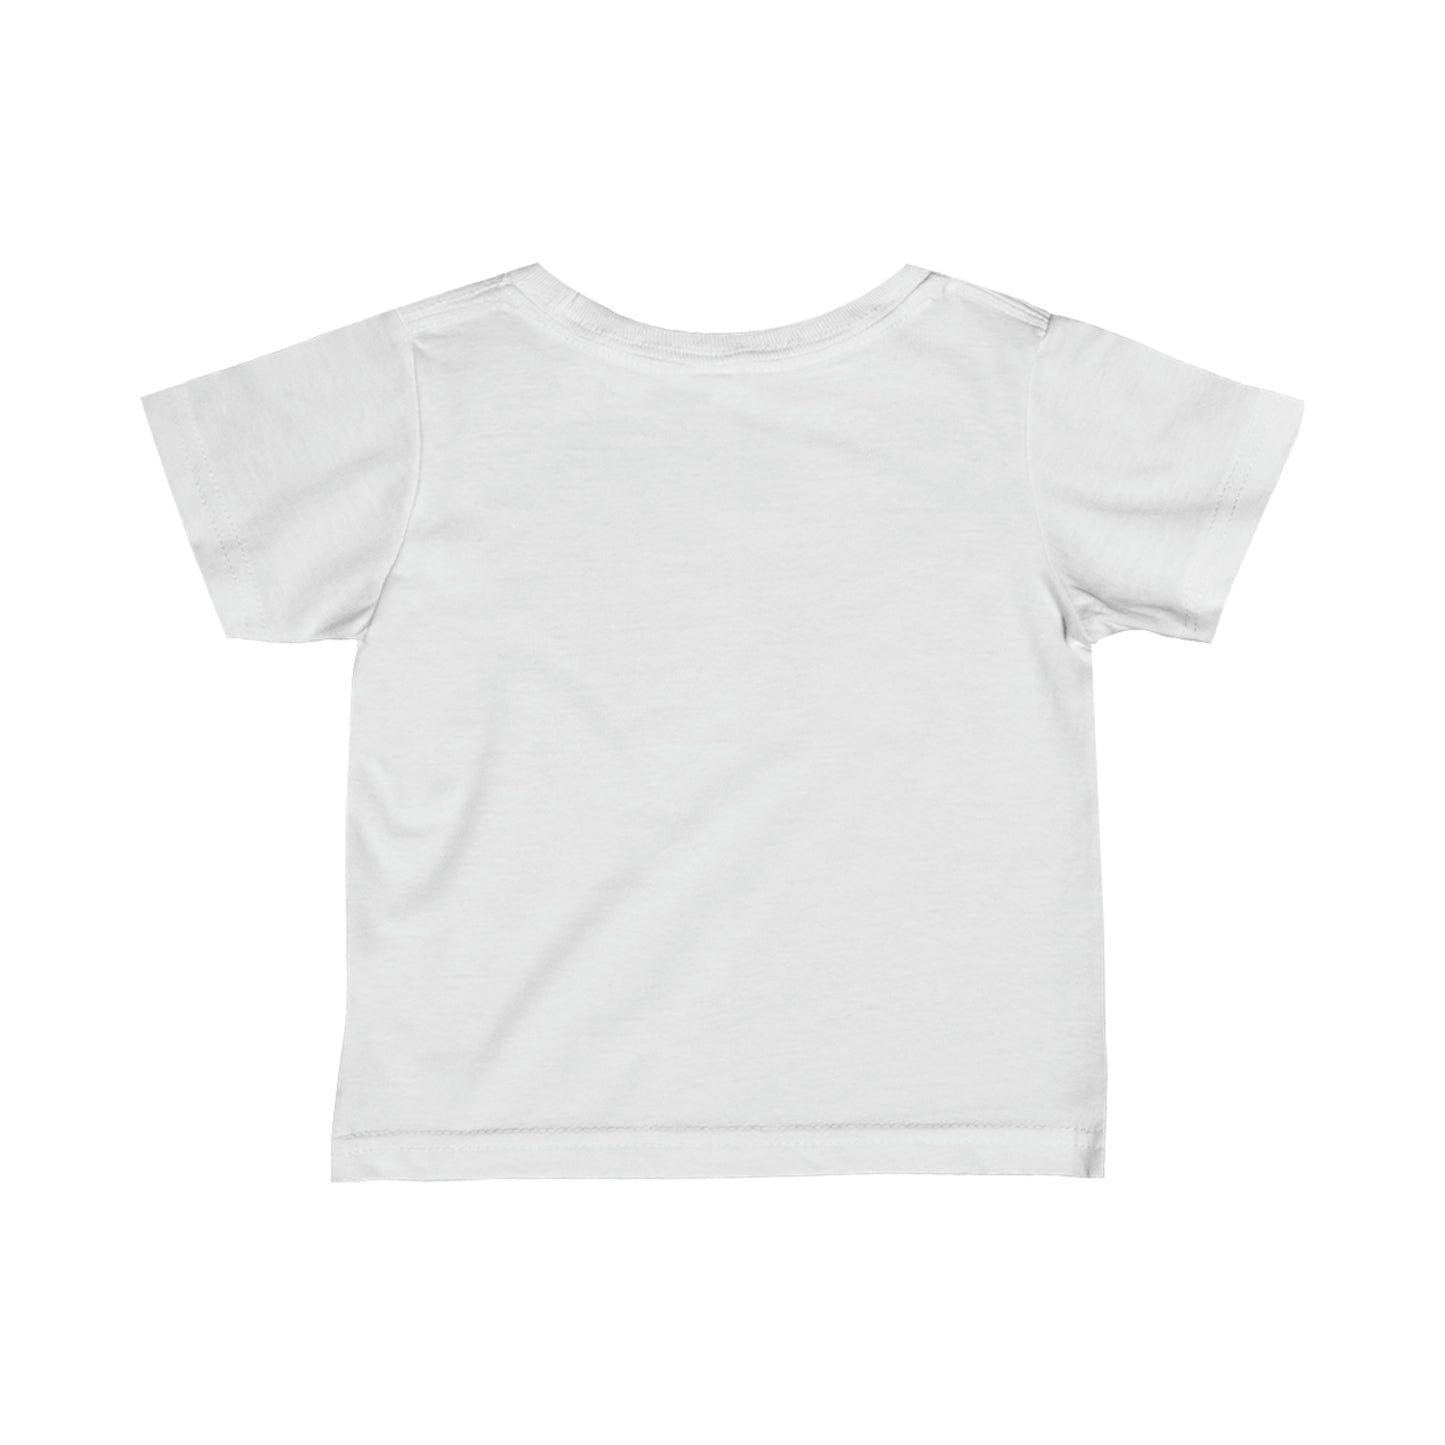 Label A Infant T-Shirt